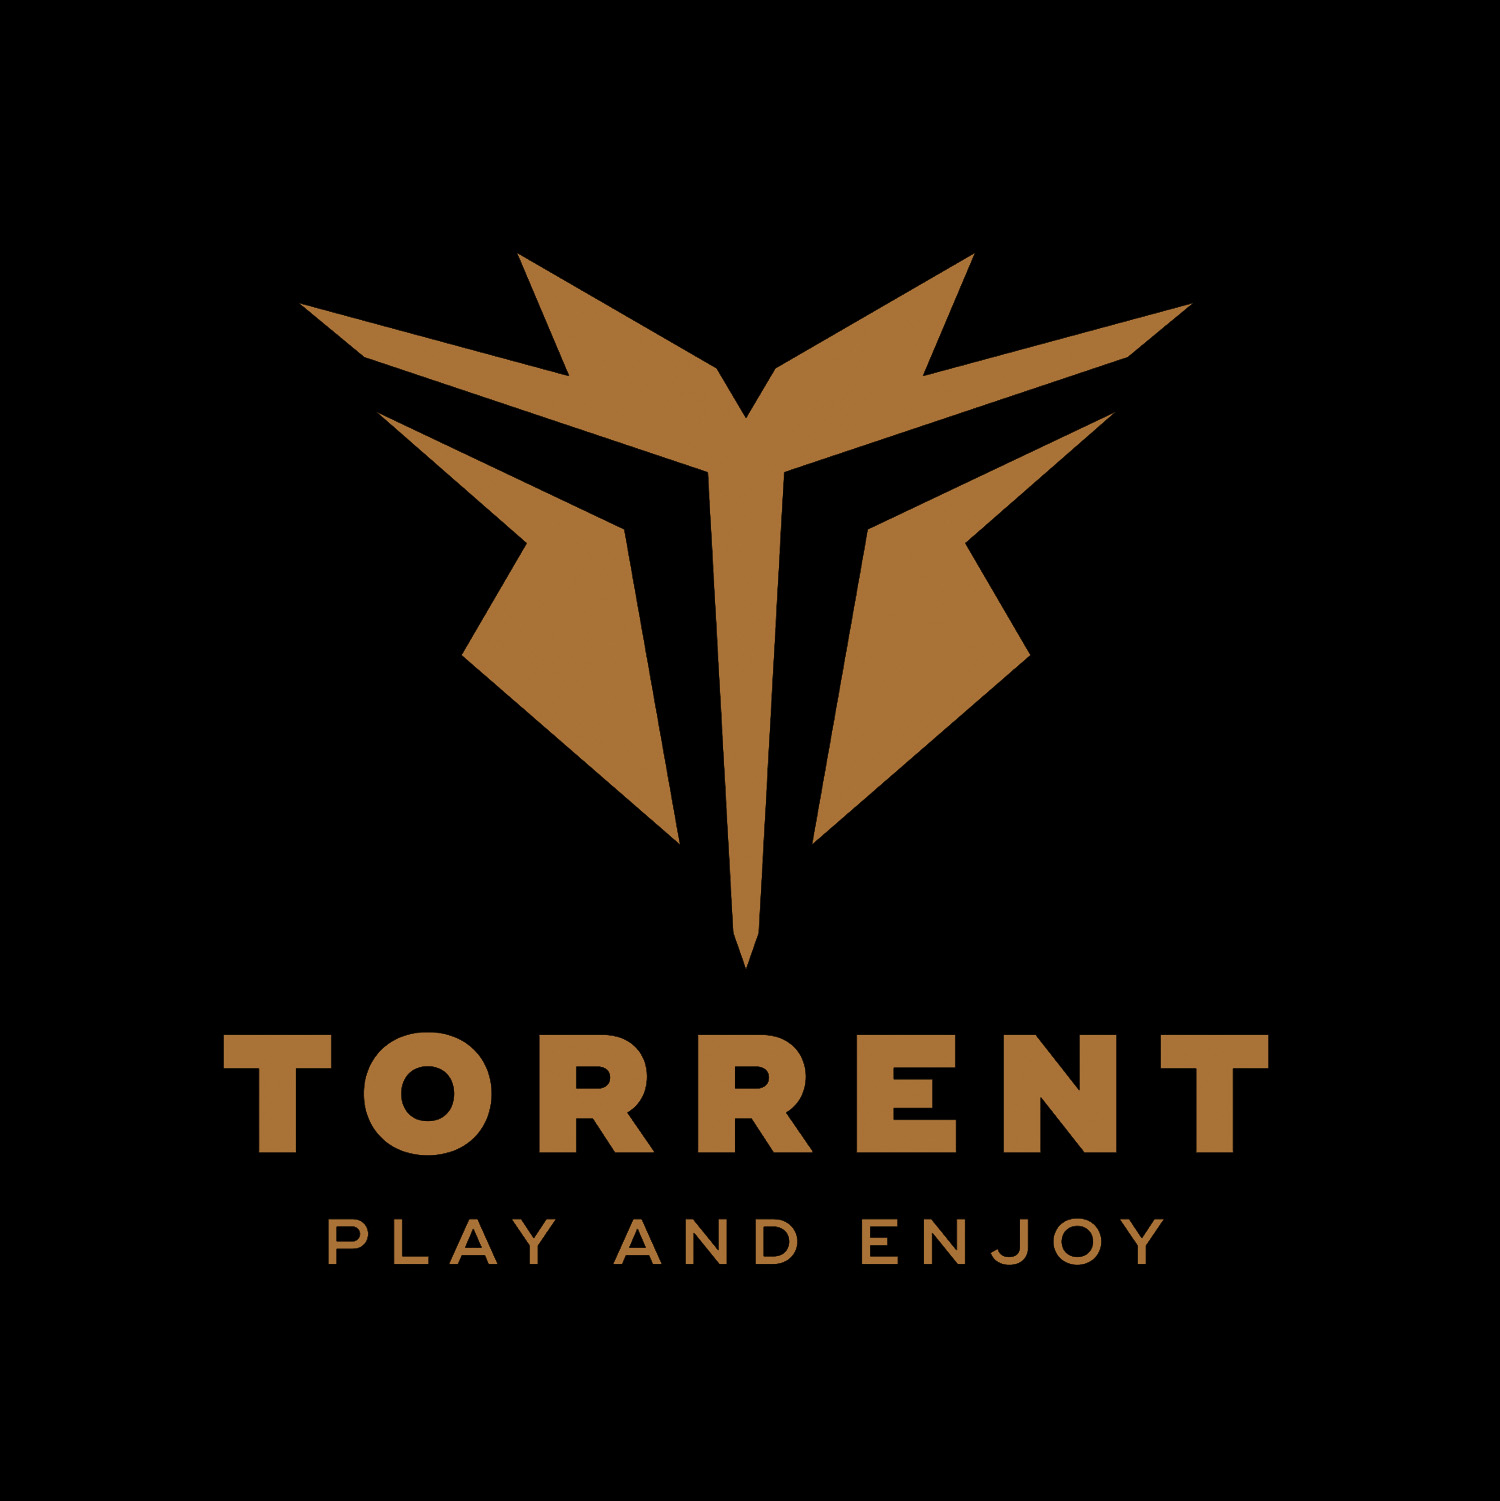 Therwiz Design logon suunnittelu, Torrent salibandy logo